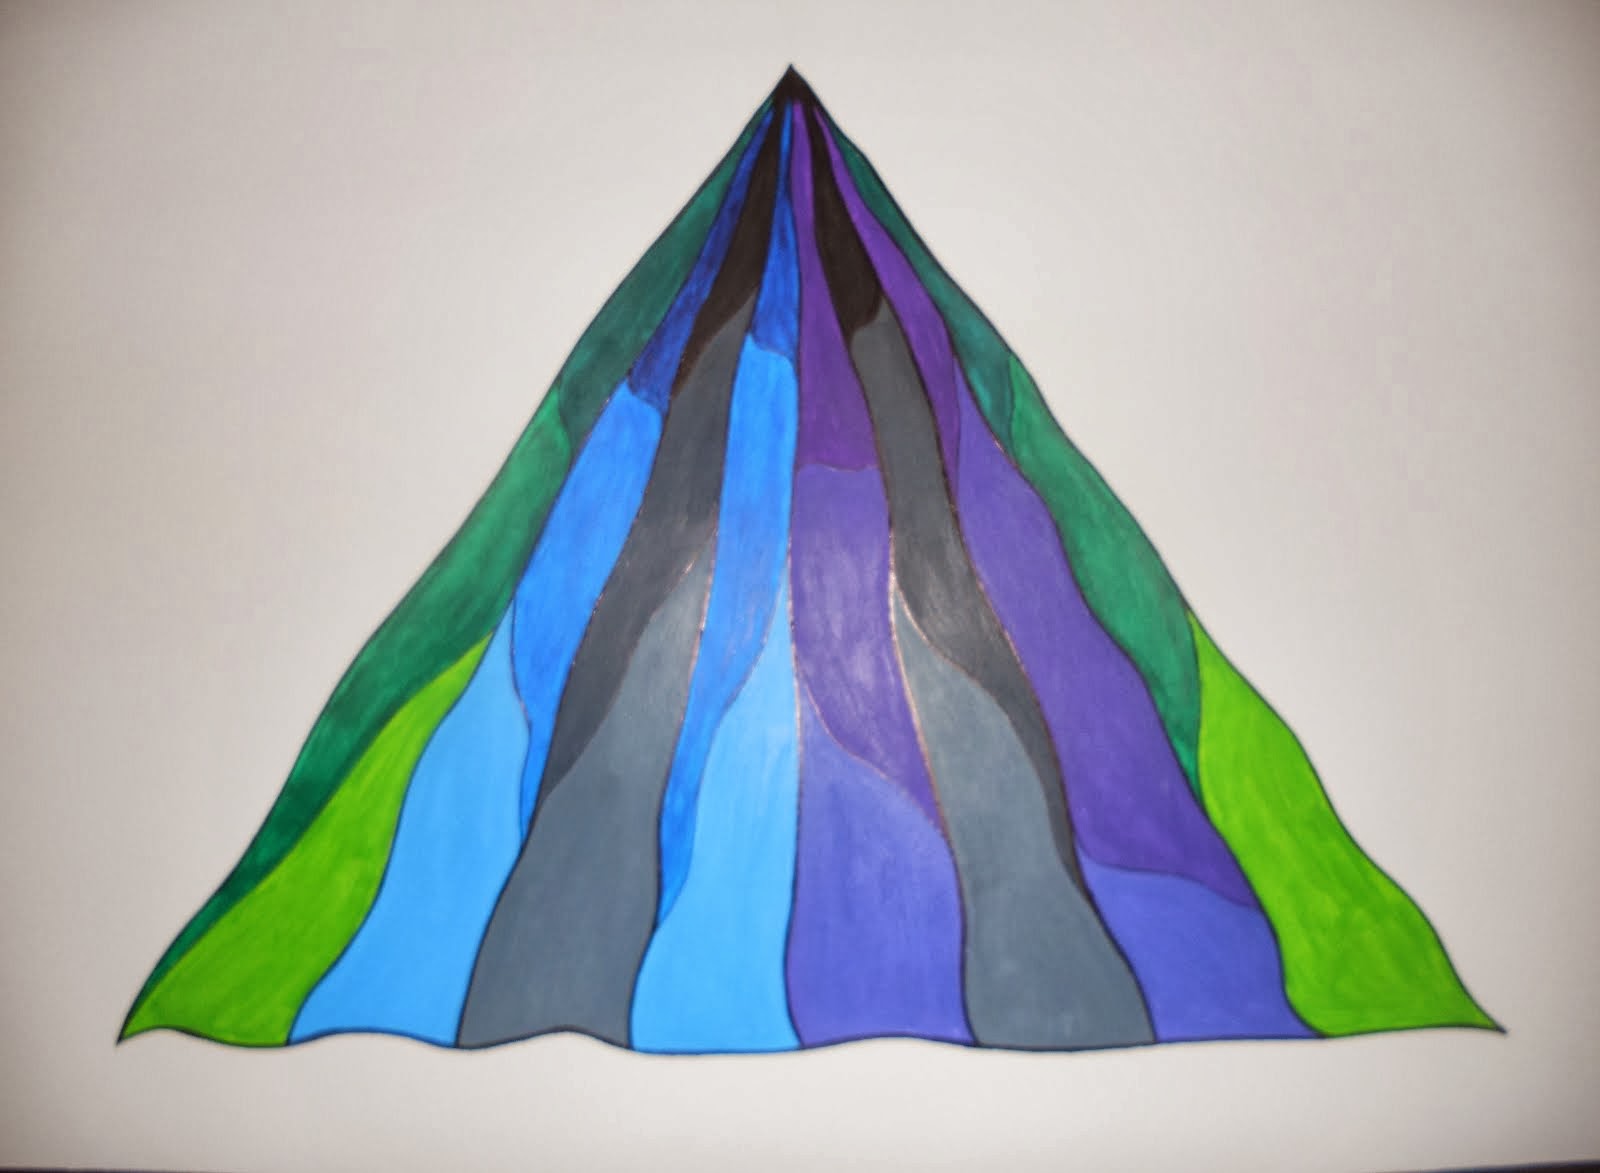 C3. A2: Trama triangular colores fríos